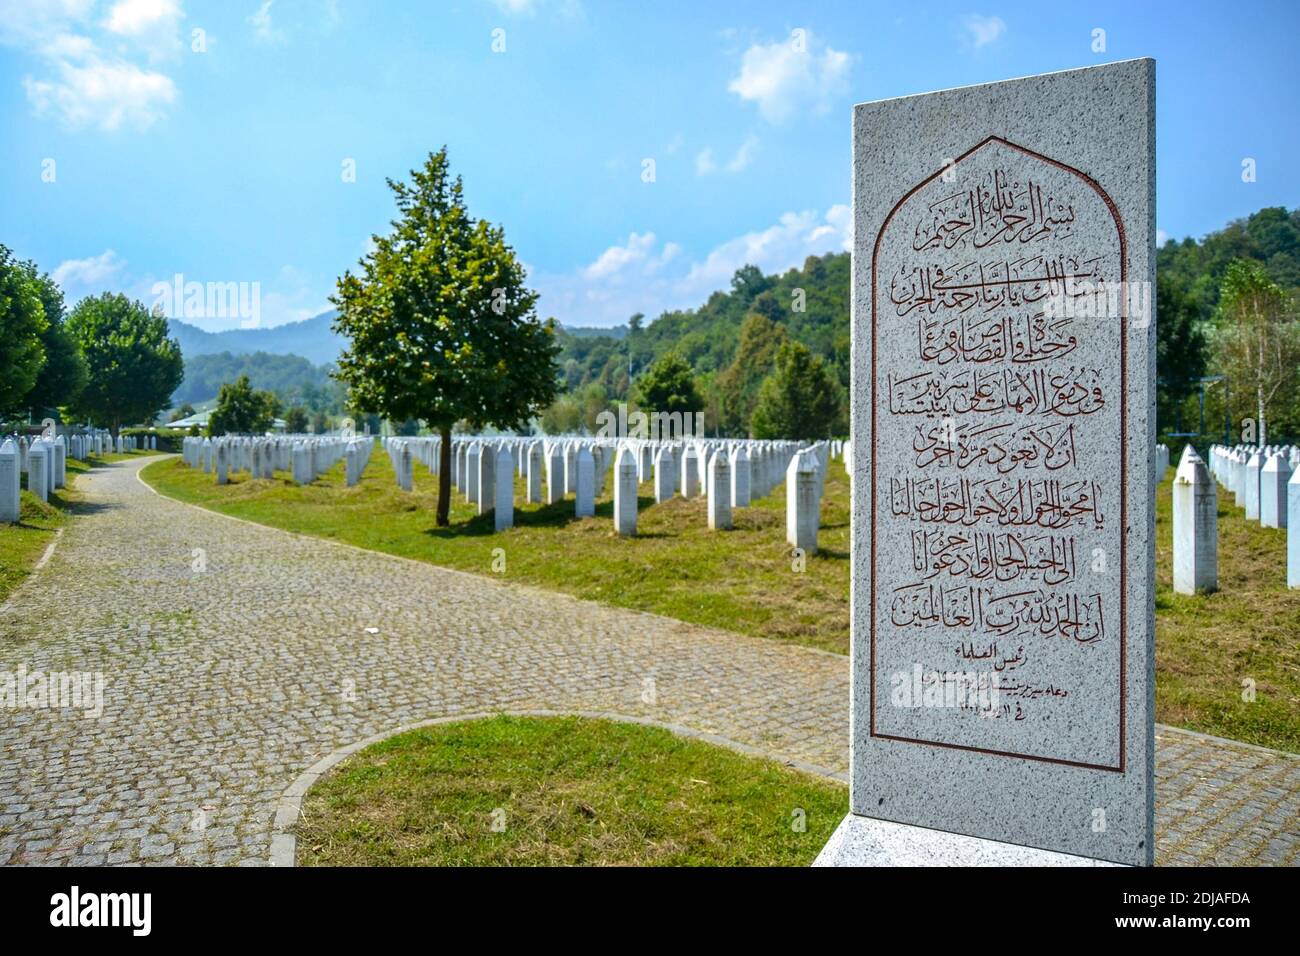 12.08.2018. Srebrenica. Bosnien und Herzegowina. Opfer des Massakers über muslime im Jahr 1995 auf dem Potocari-Denkmal und Friedhof. Stockfoto